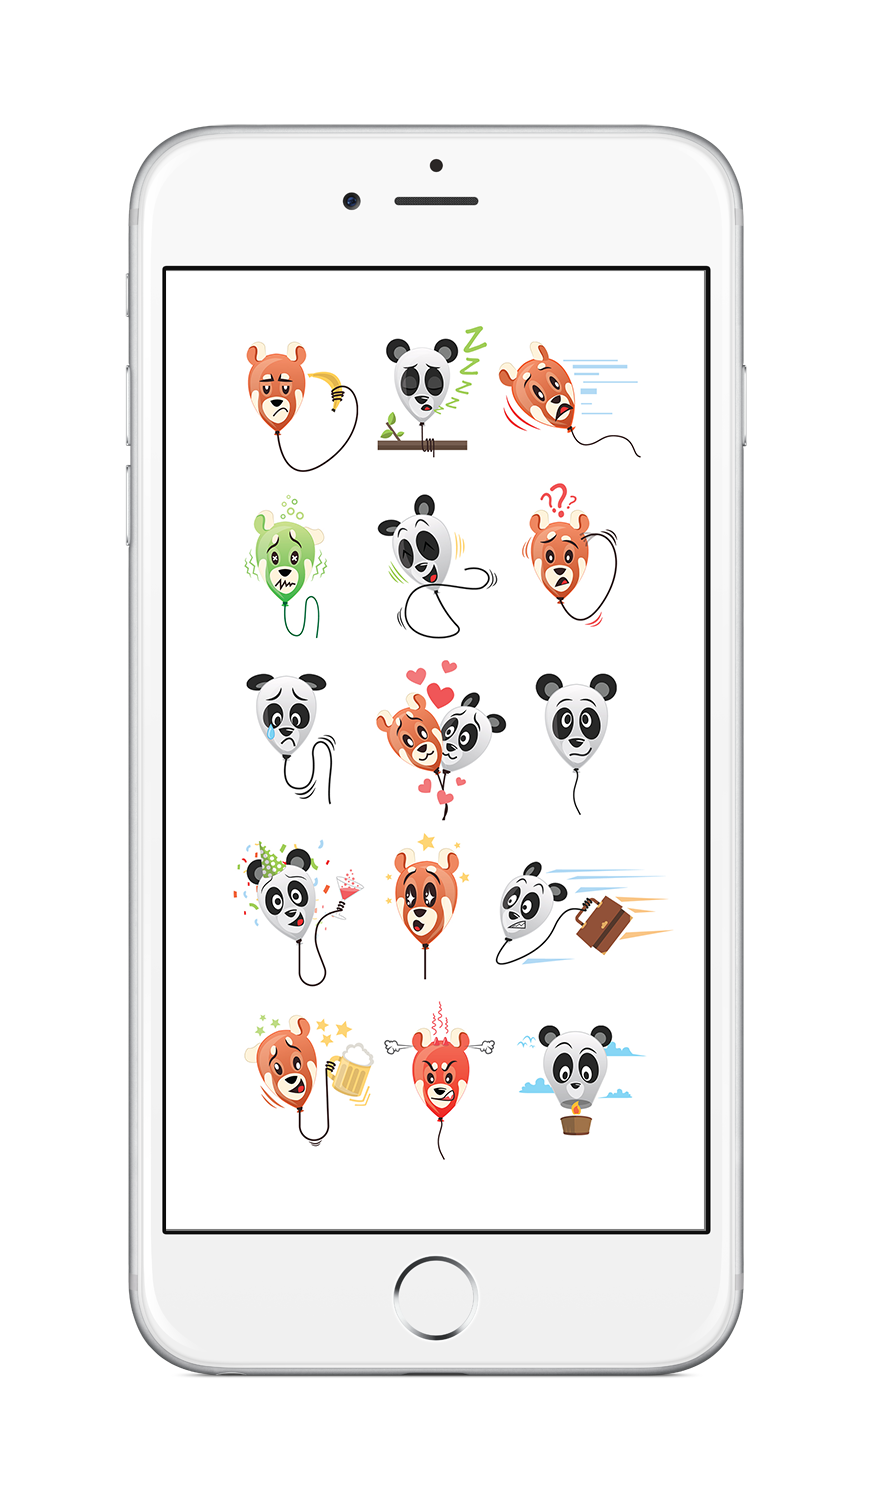 Stickers - iOS10 pandas balloons